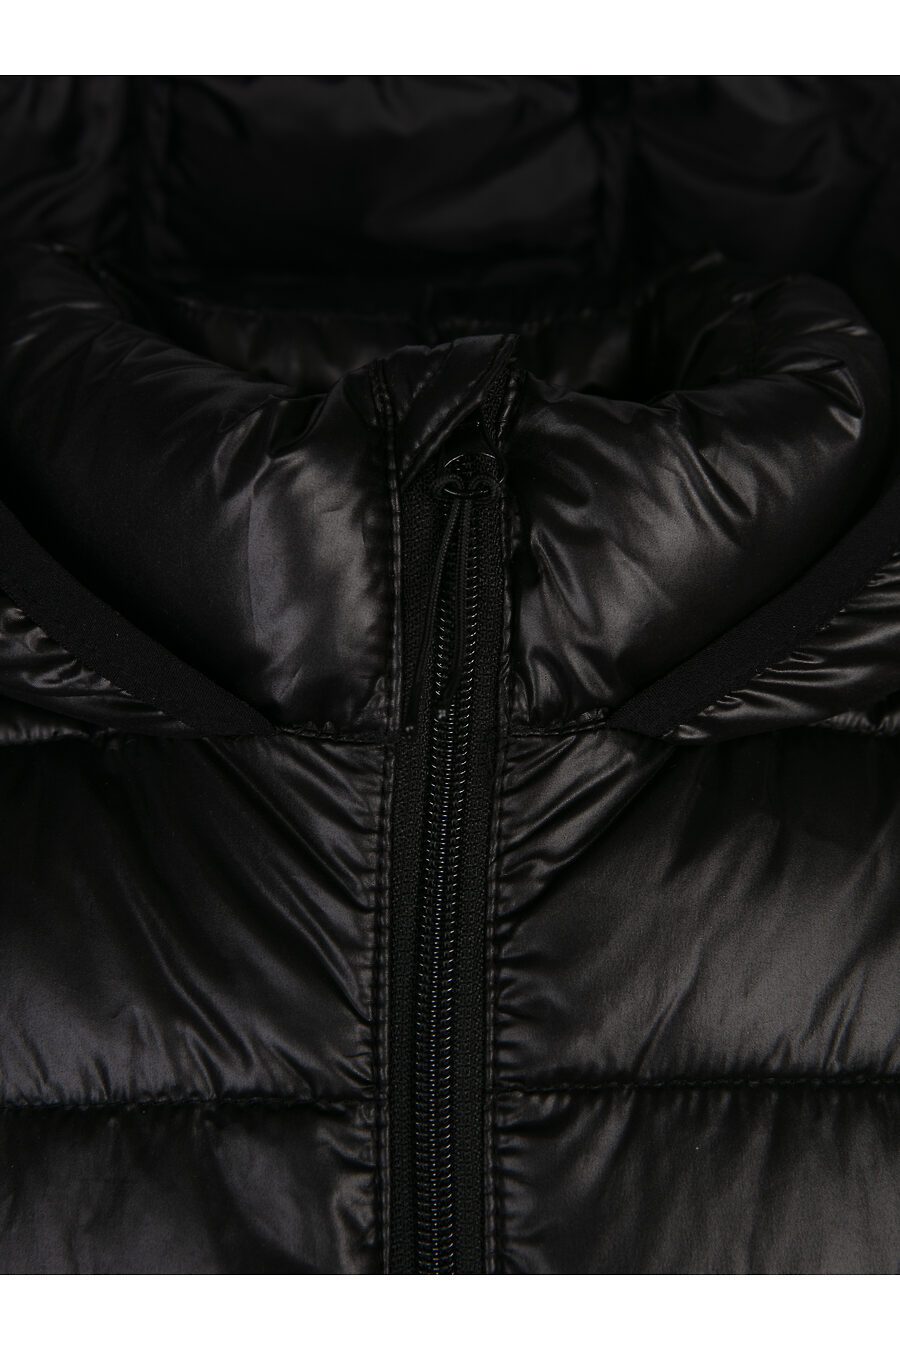 Куртка PLAYTODAY (785760), купить в Moyo.moda